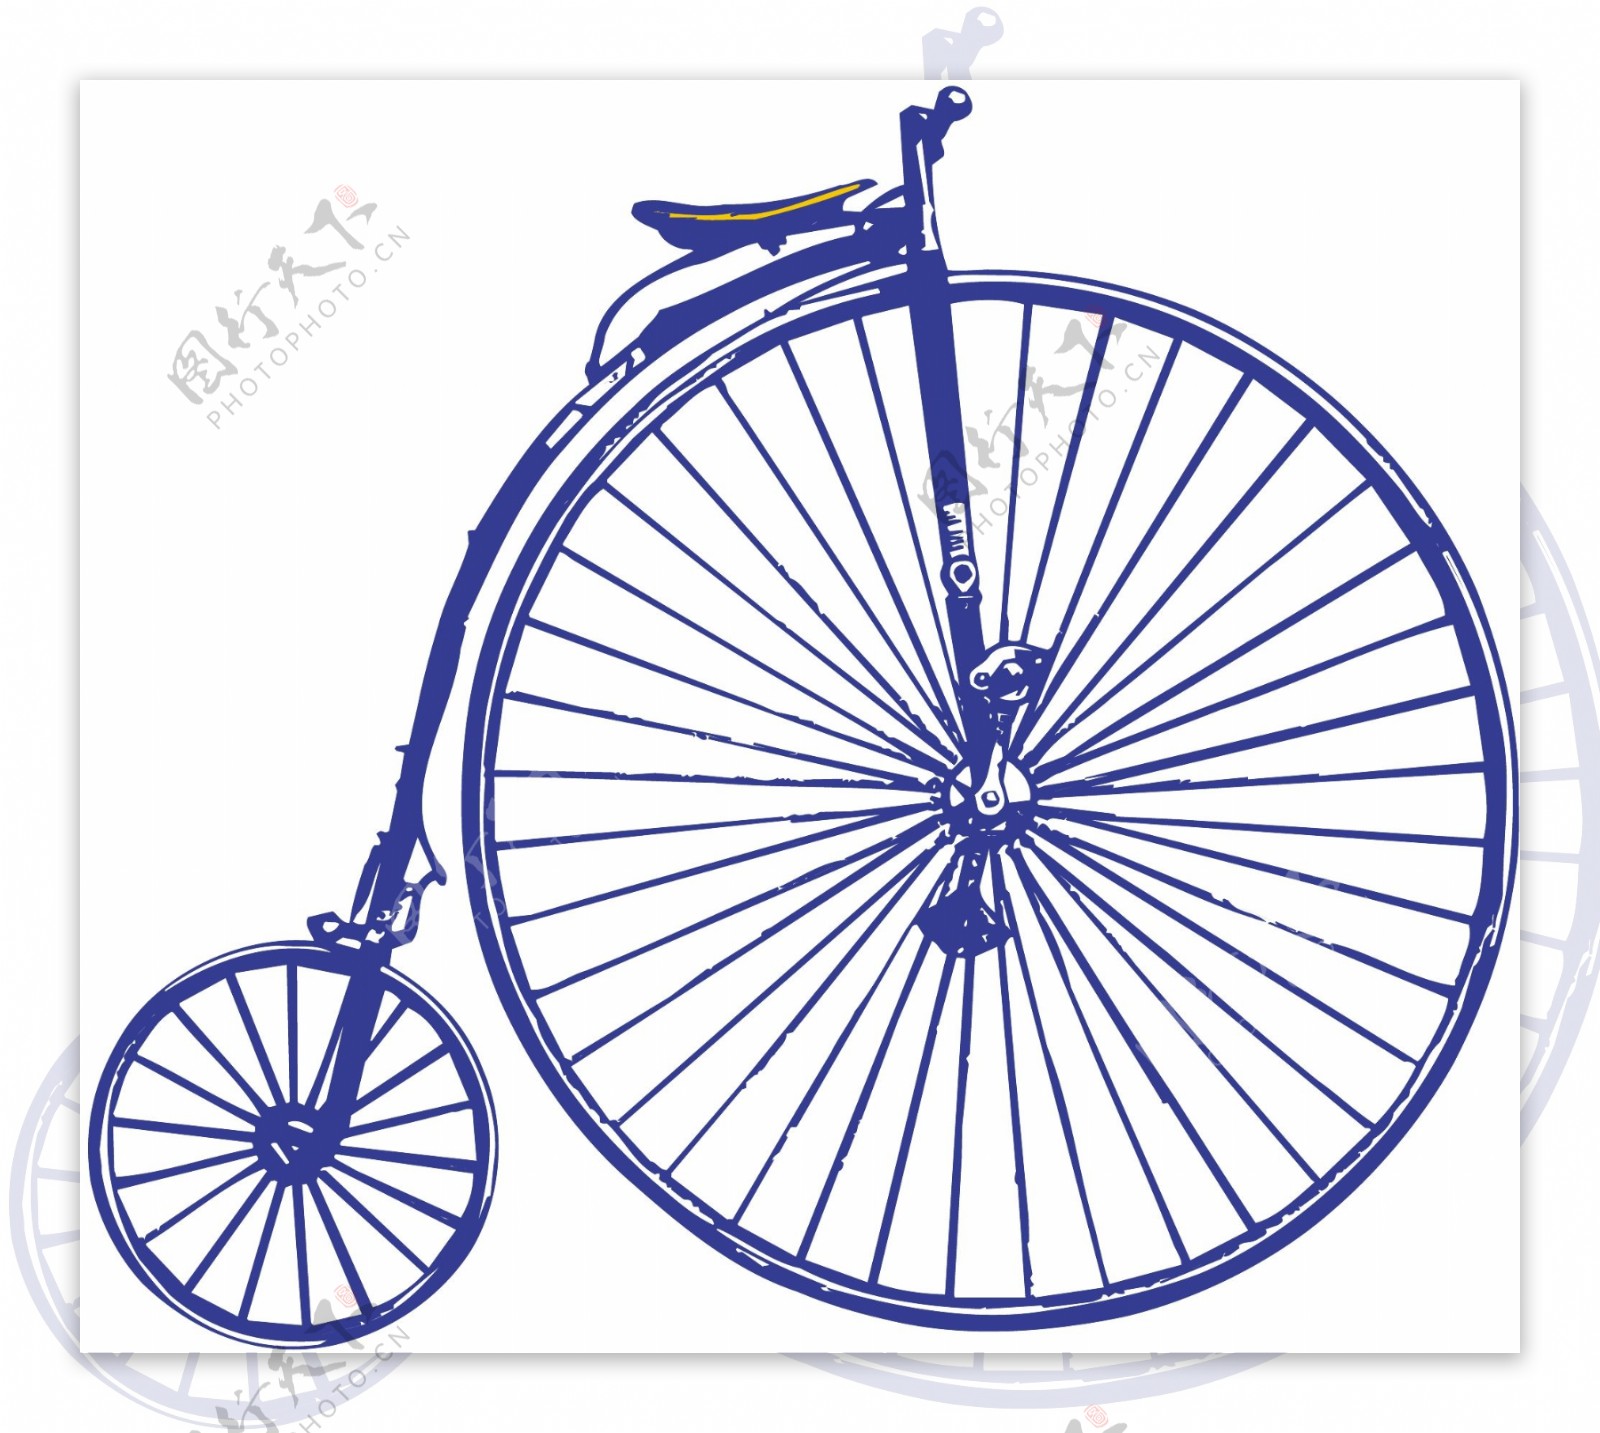 自行车交通工具矢量素材EPS格式0006